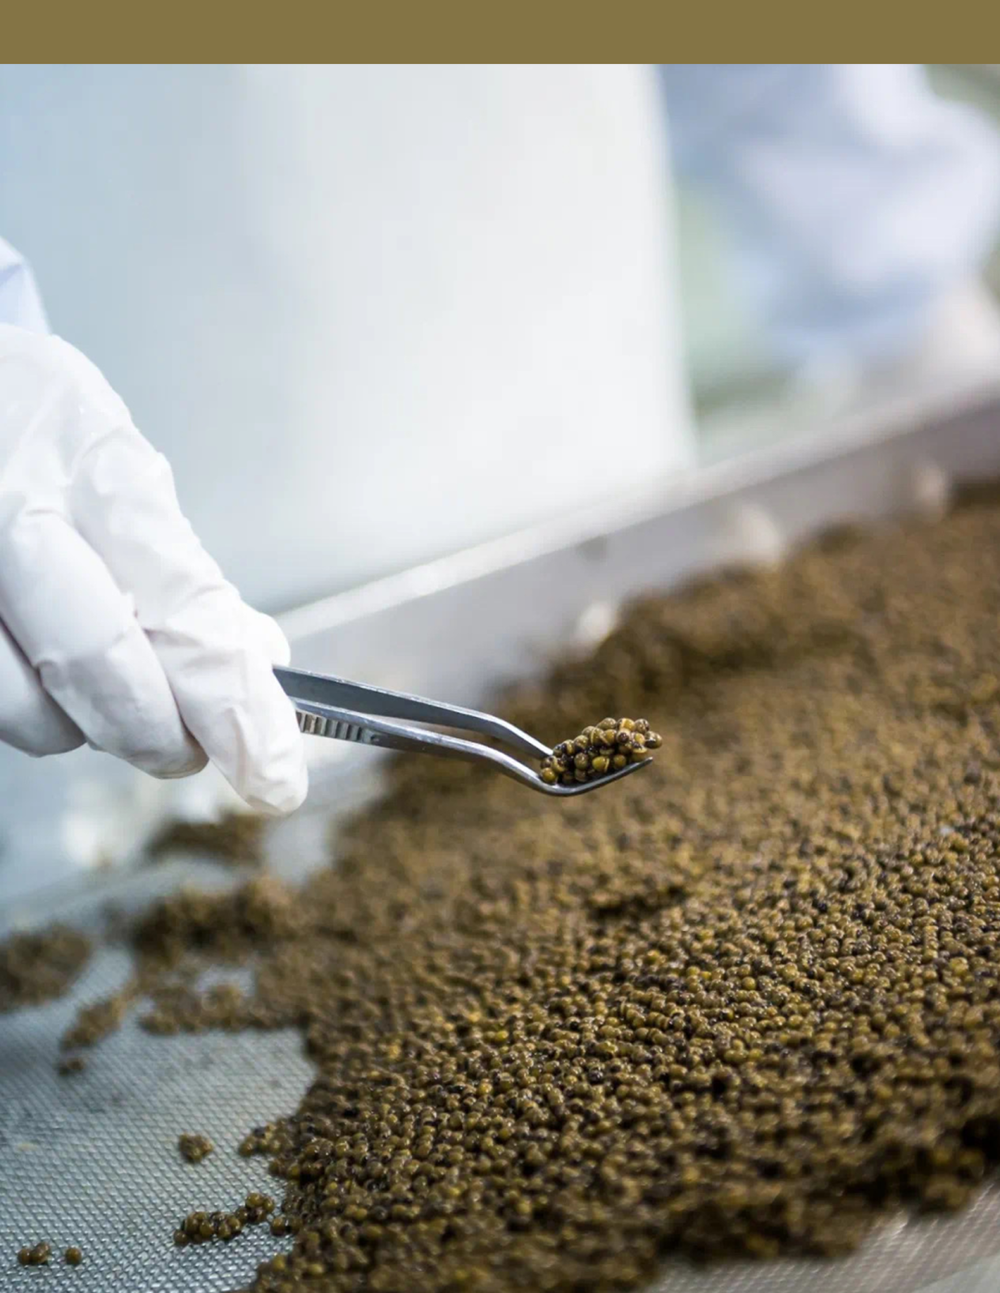 国产鱼籽酱制作过程。© 卡露伽鱼籽酱<br>